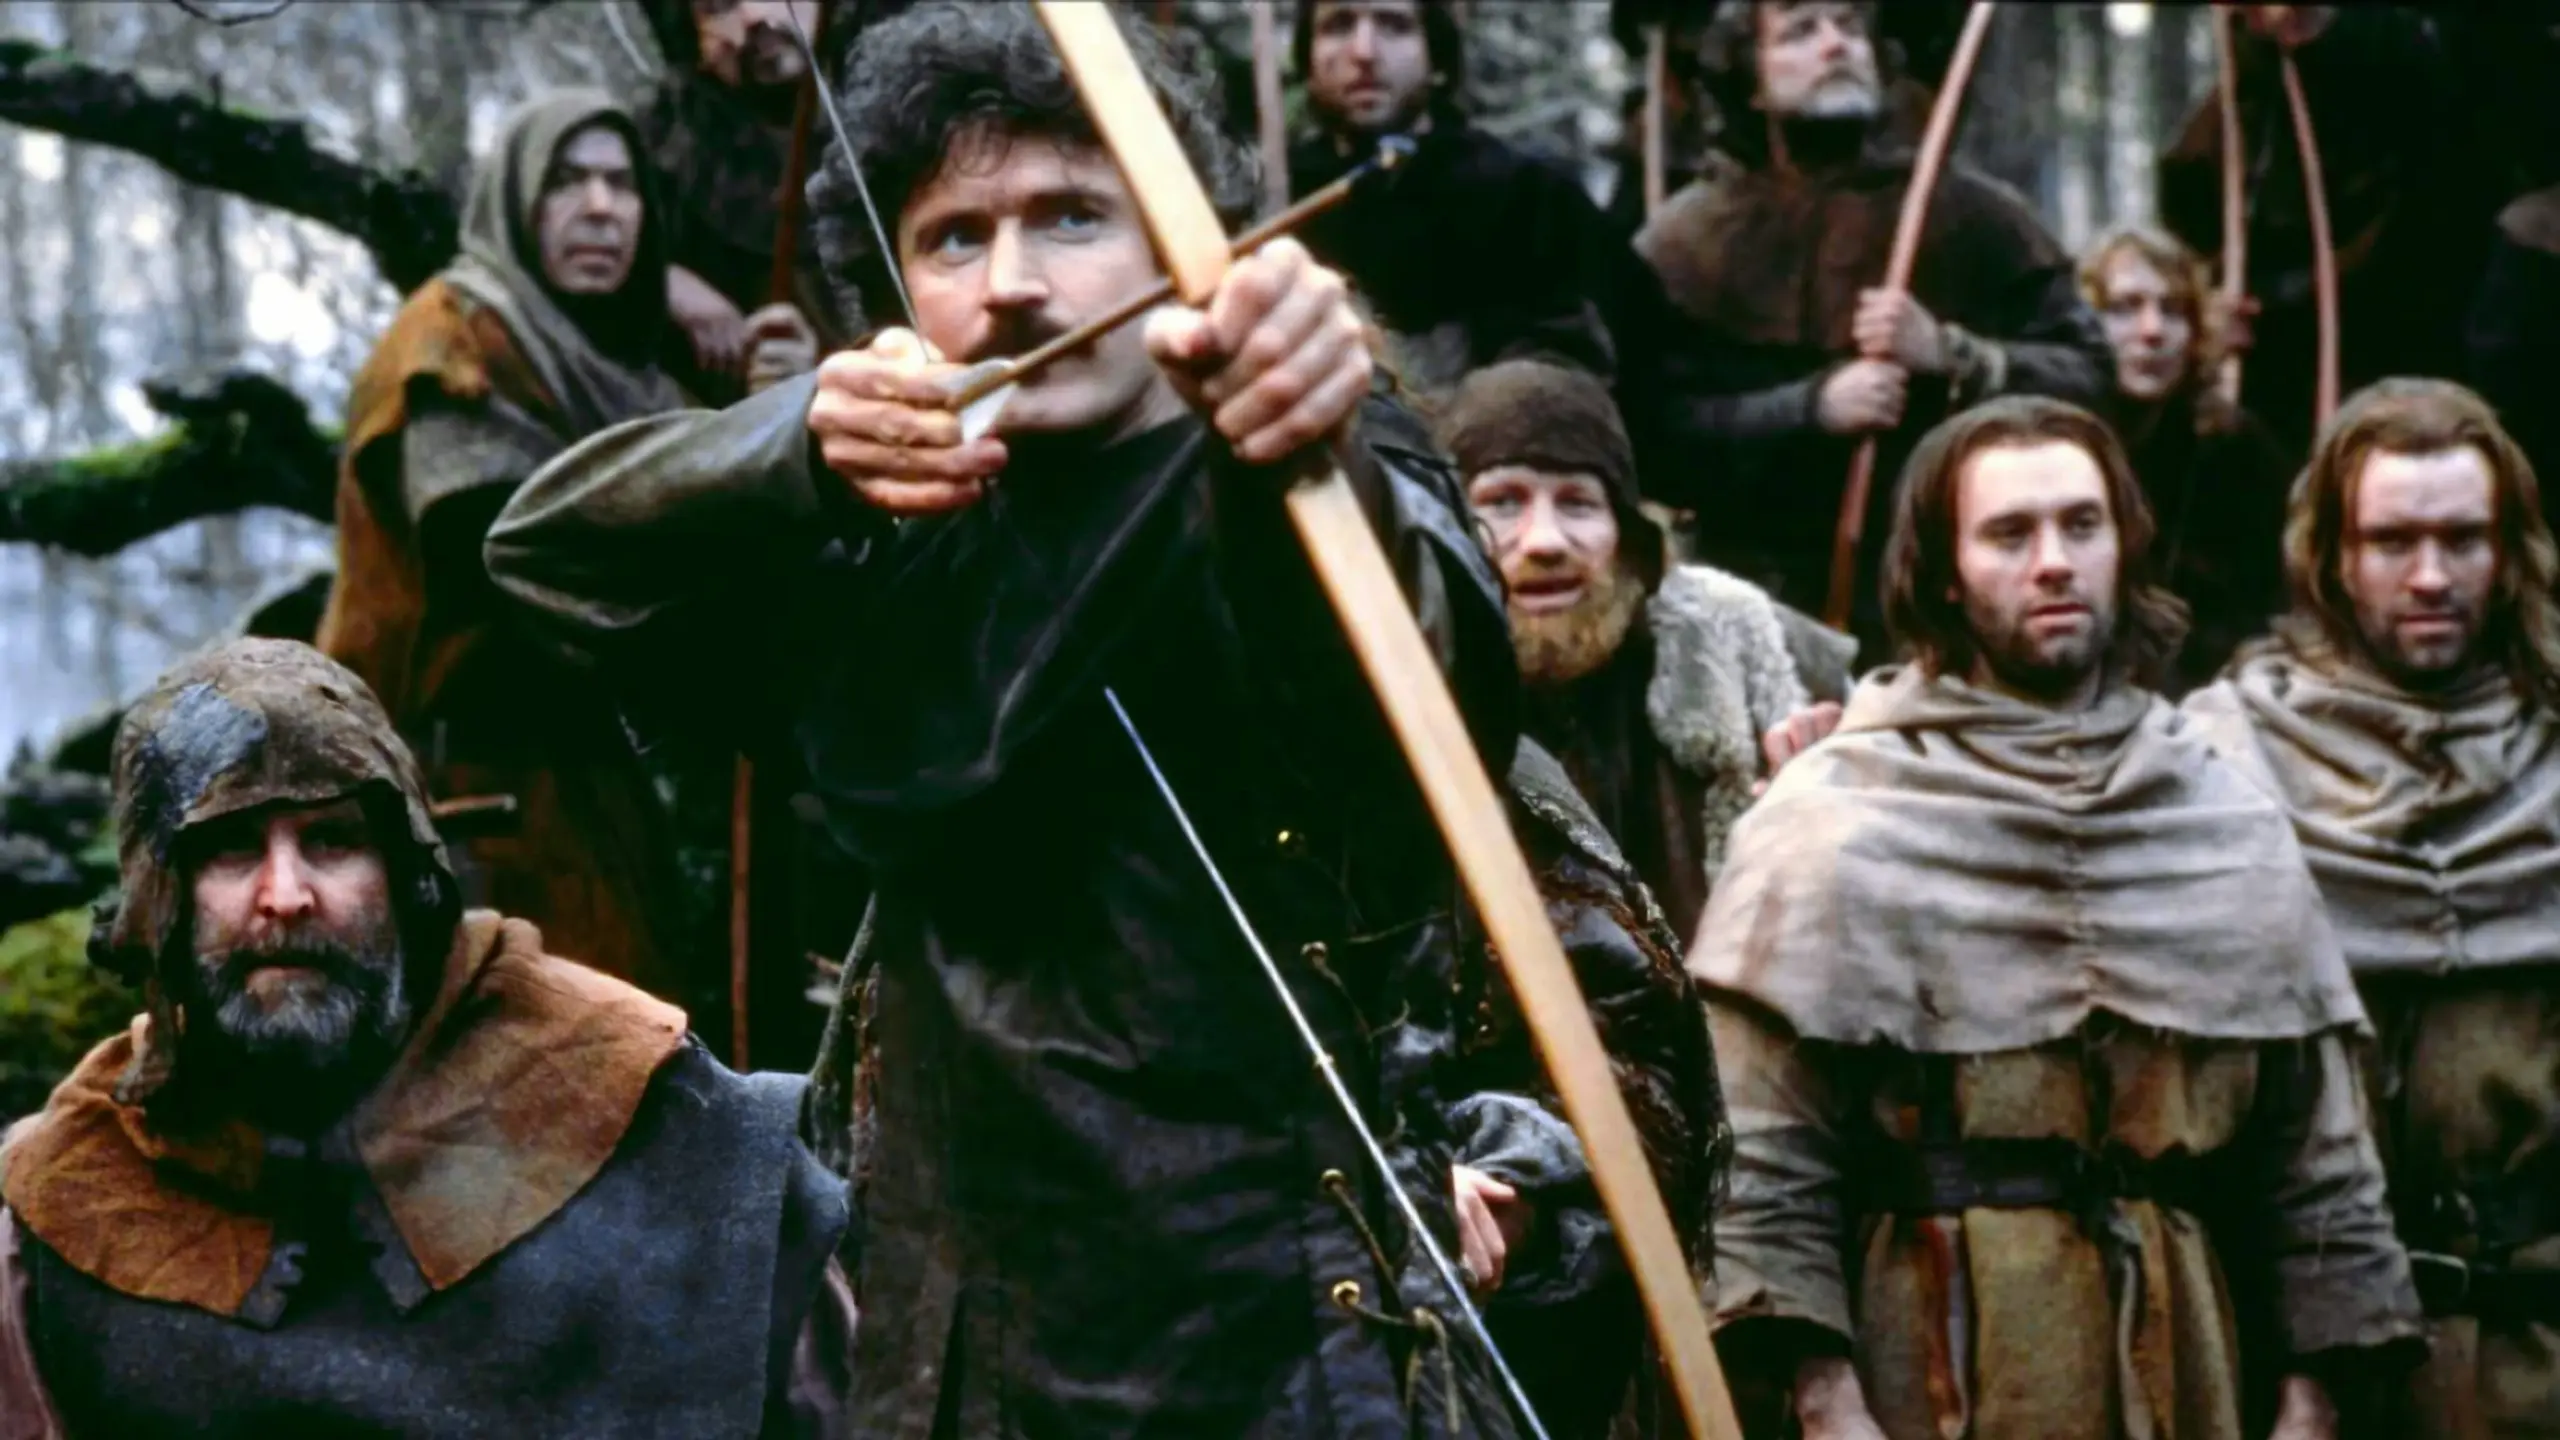 Robin Hood - Ein Leben für Richard Löwenherz